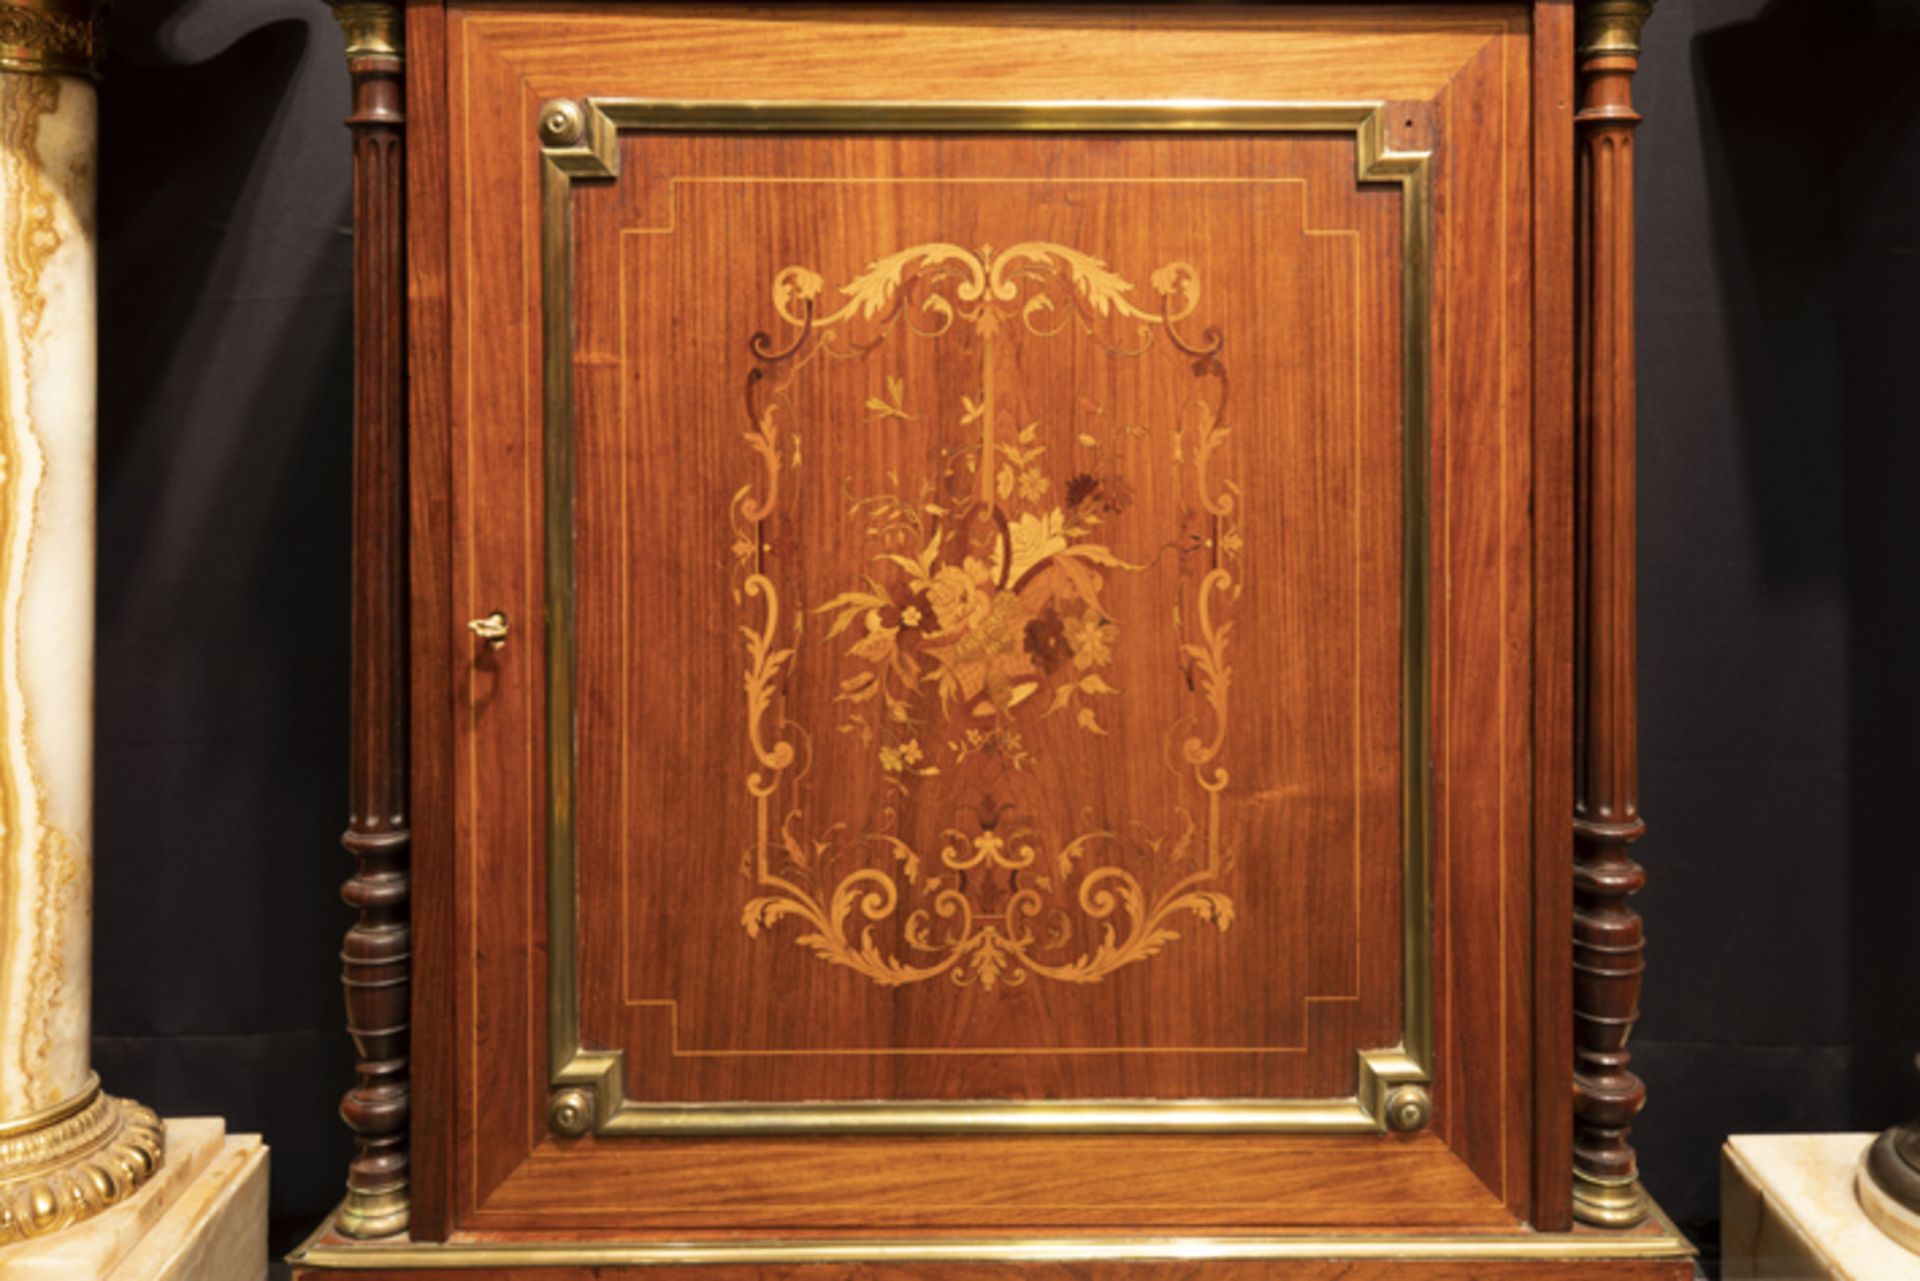 FRANKRIJK - 19° EEUW neoclassicistisch meubel in marqueterie versierd met koper- en [...] - Bild 3 aus 3